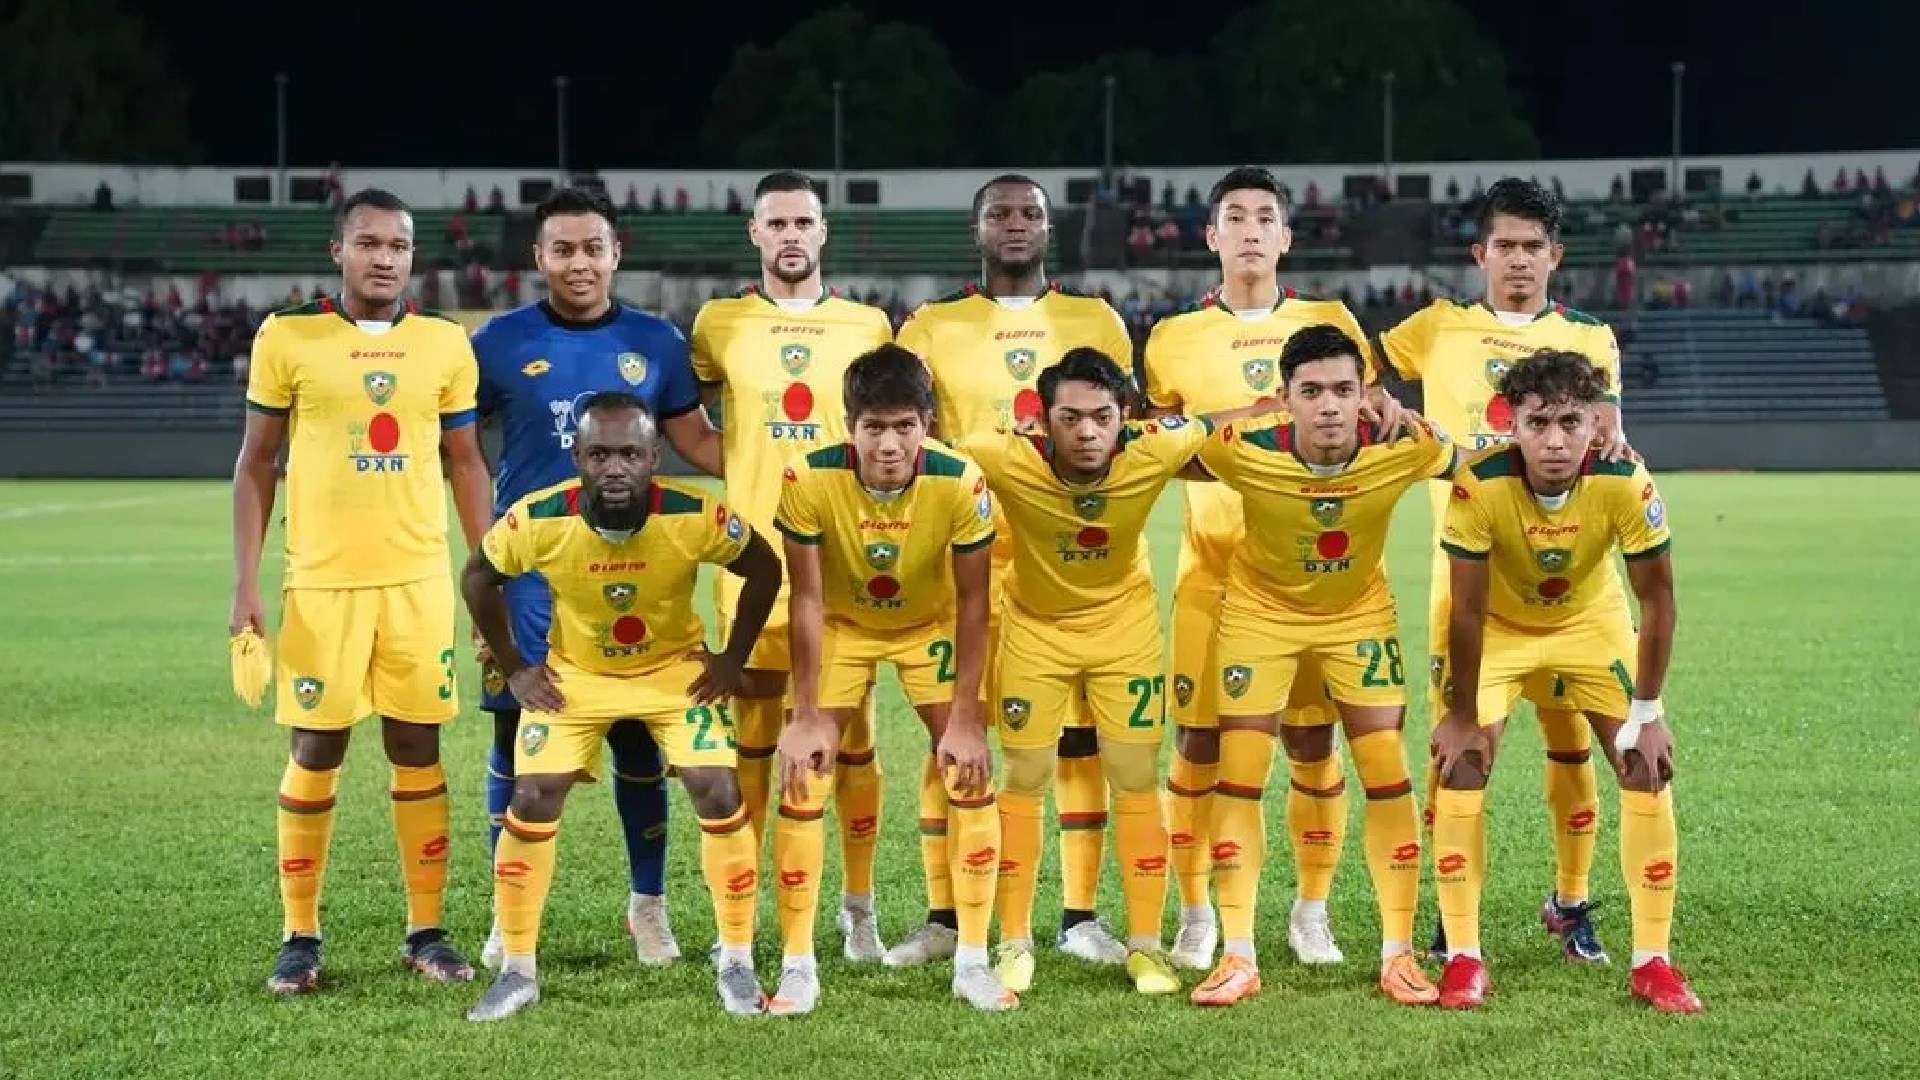 Kedah Darul Aman FC 2 Kedah FC Tak Sanggup Keciciran Mata Lagi, Sedia Benam Negeri Sembilan